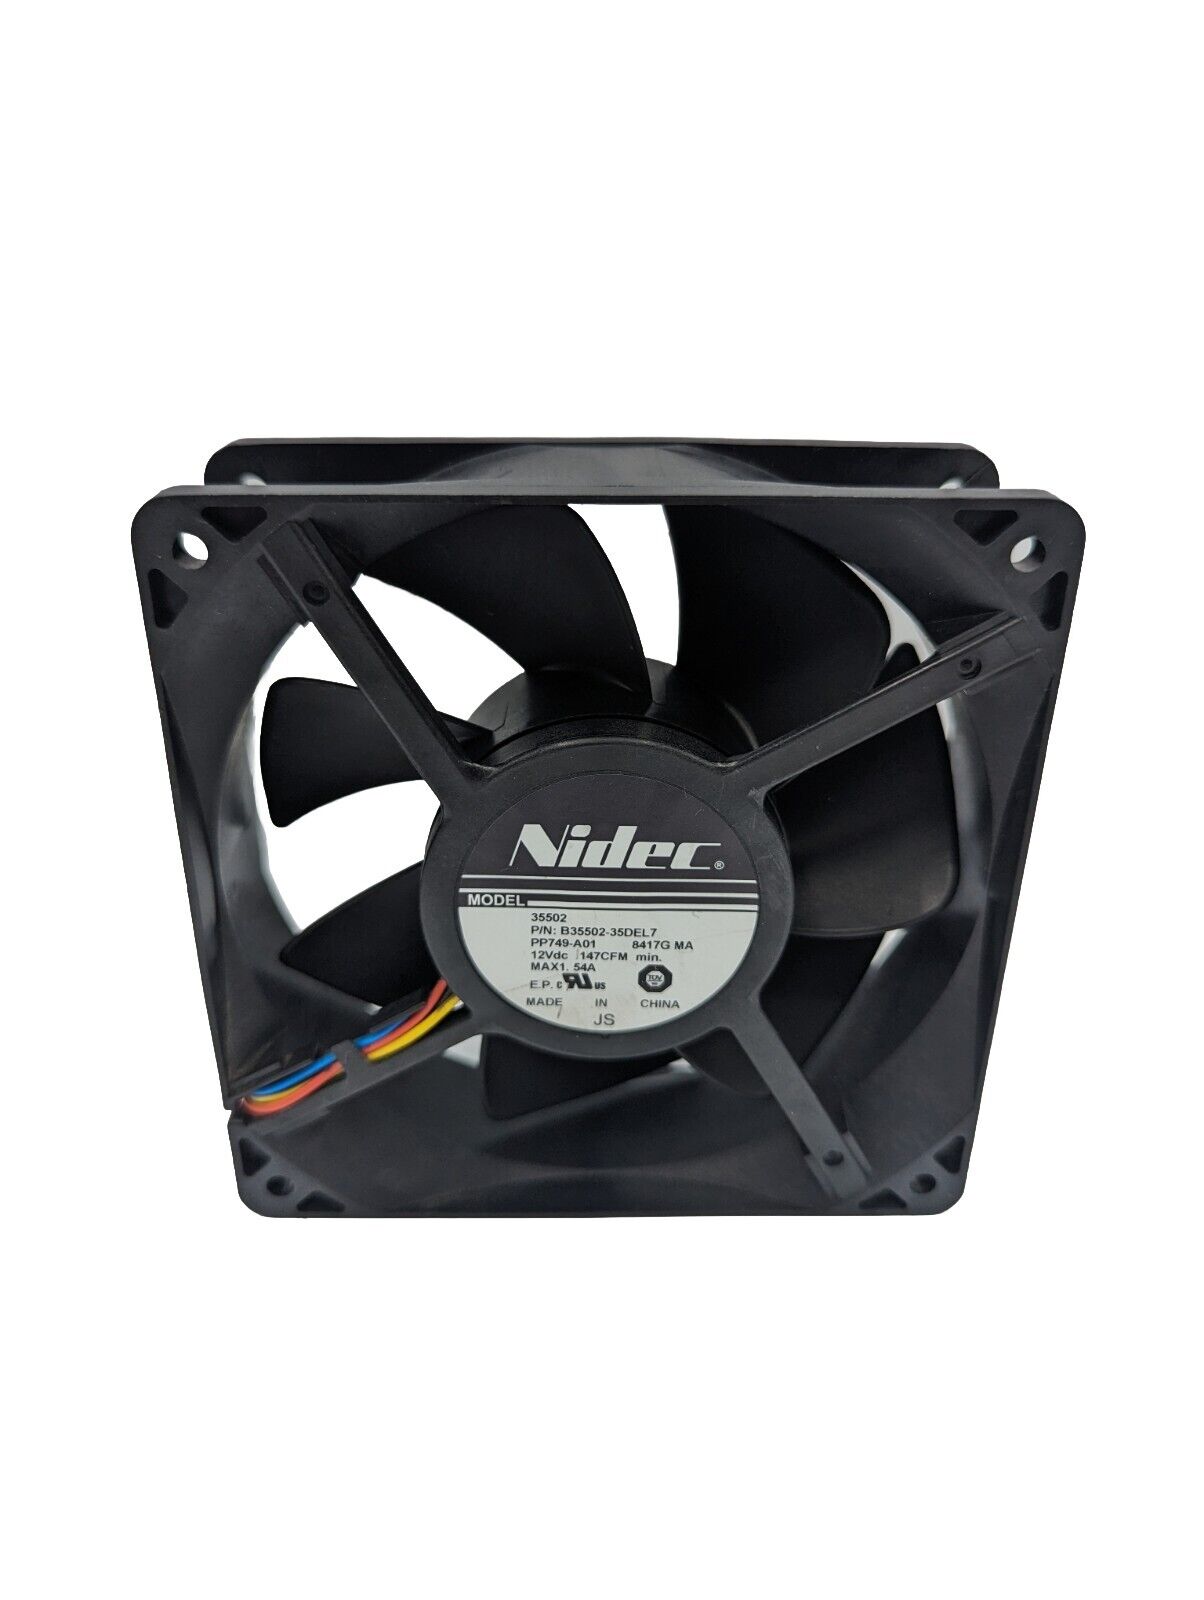 1 Piece Nidec B35502-35DEL7 12V 1.40A 4pin Cooling Fan A3